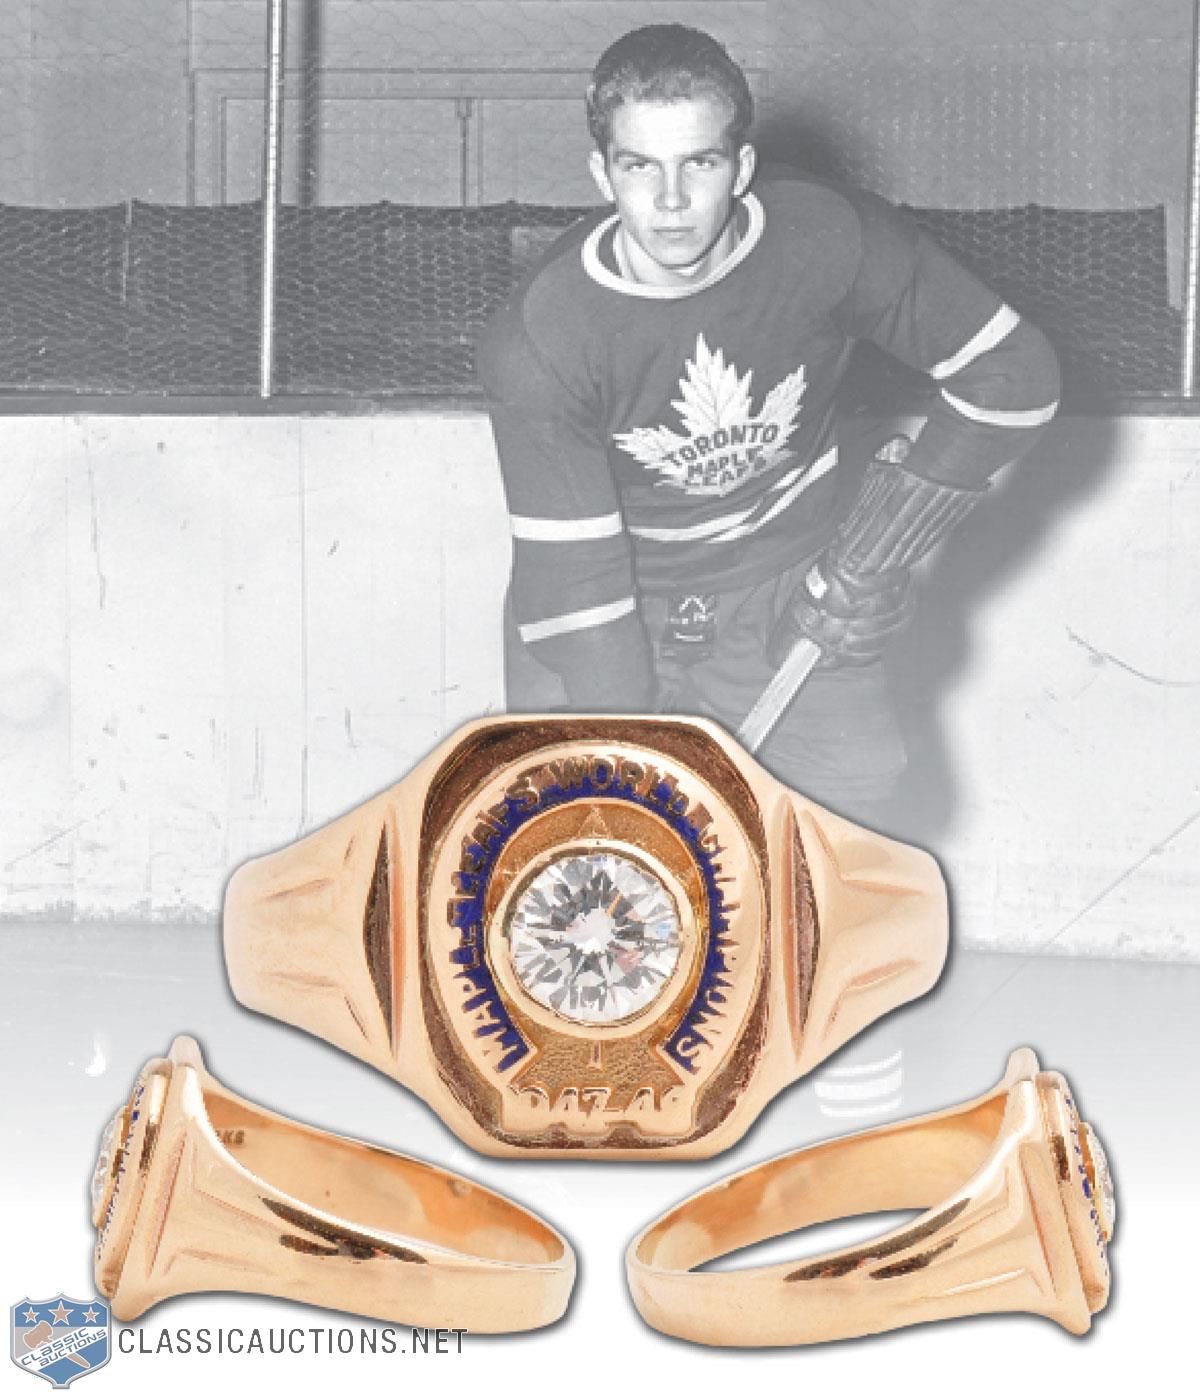 Toronto Maple Leafs Memorabilia -1951 Bill Barilko Classic - 12 x